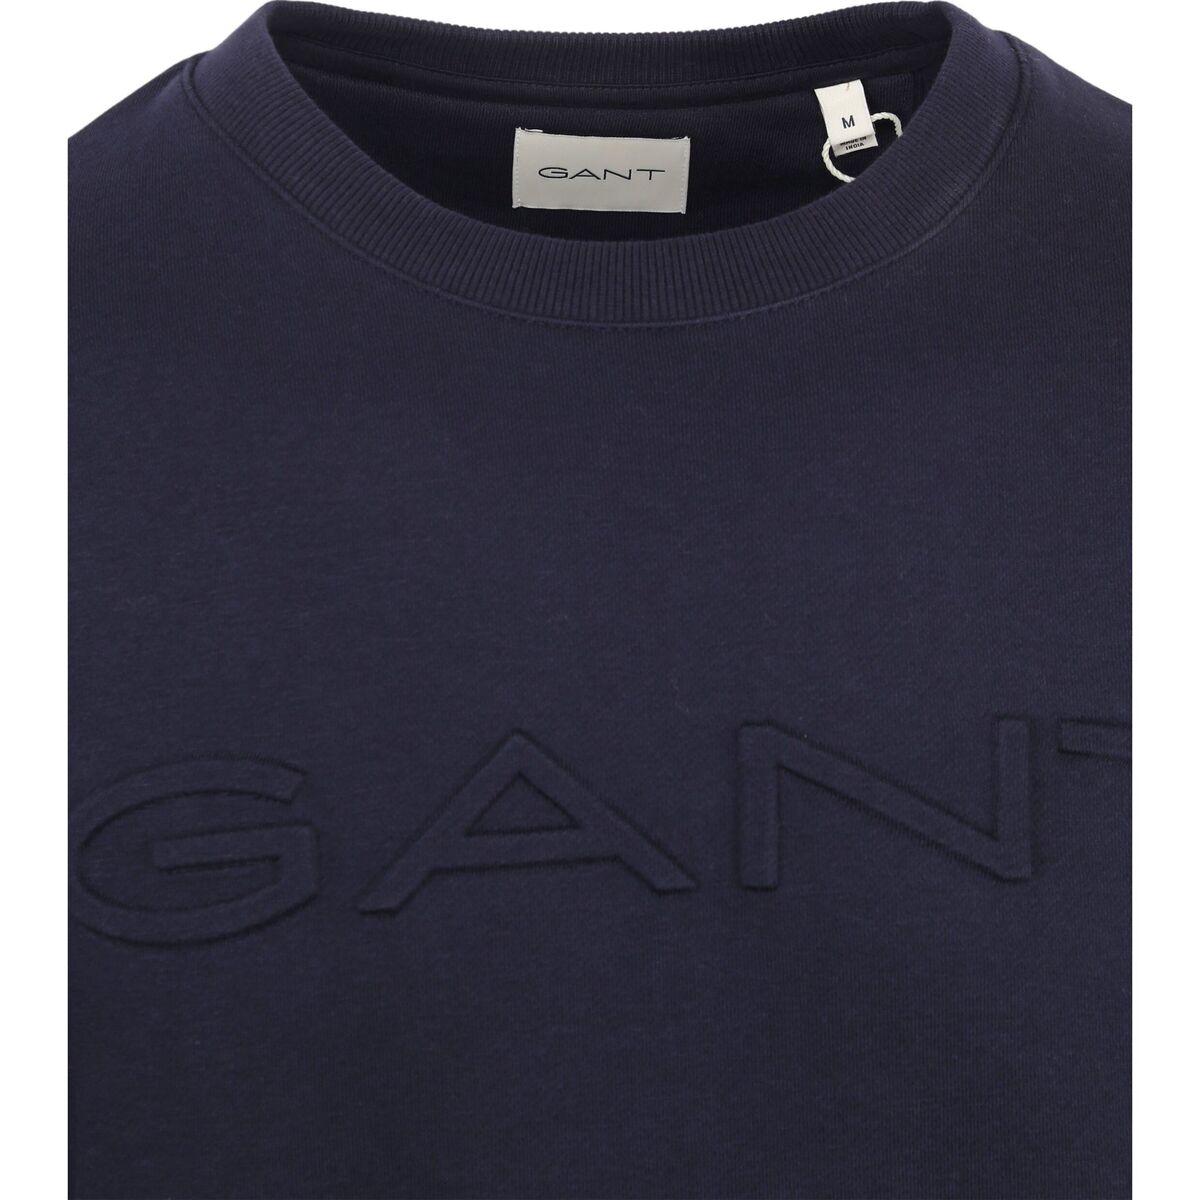 Gant Bleu Pullover Embossed Logo Navy nfDrYXSg